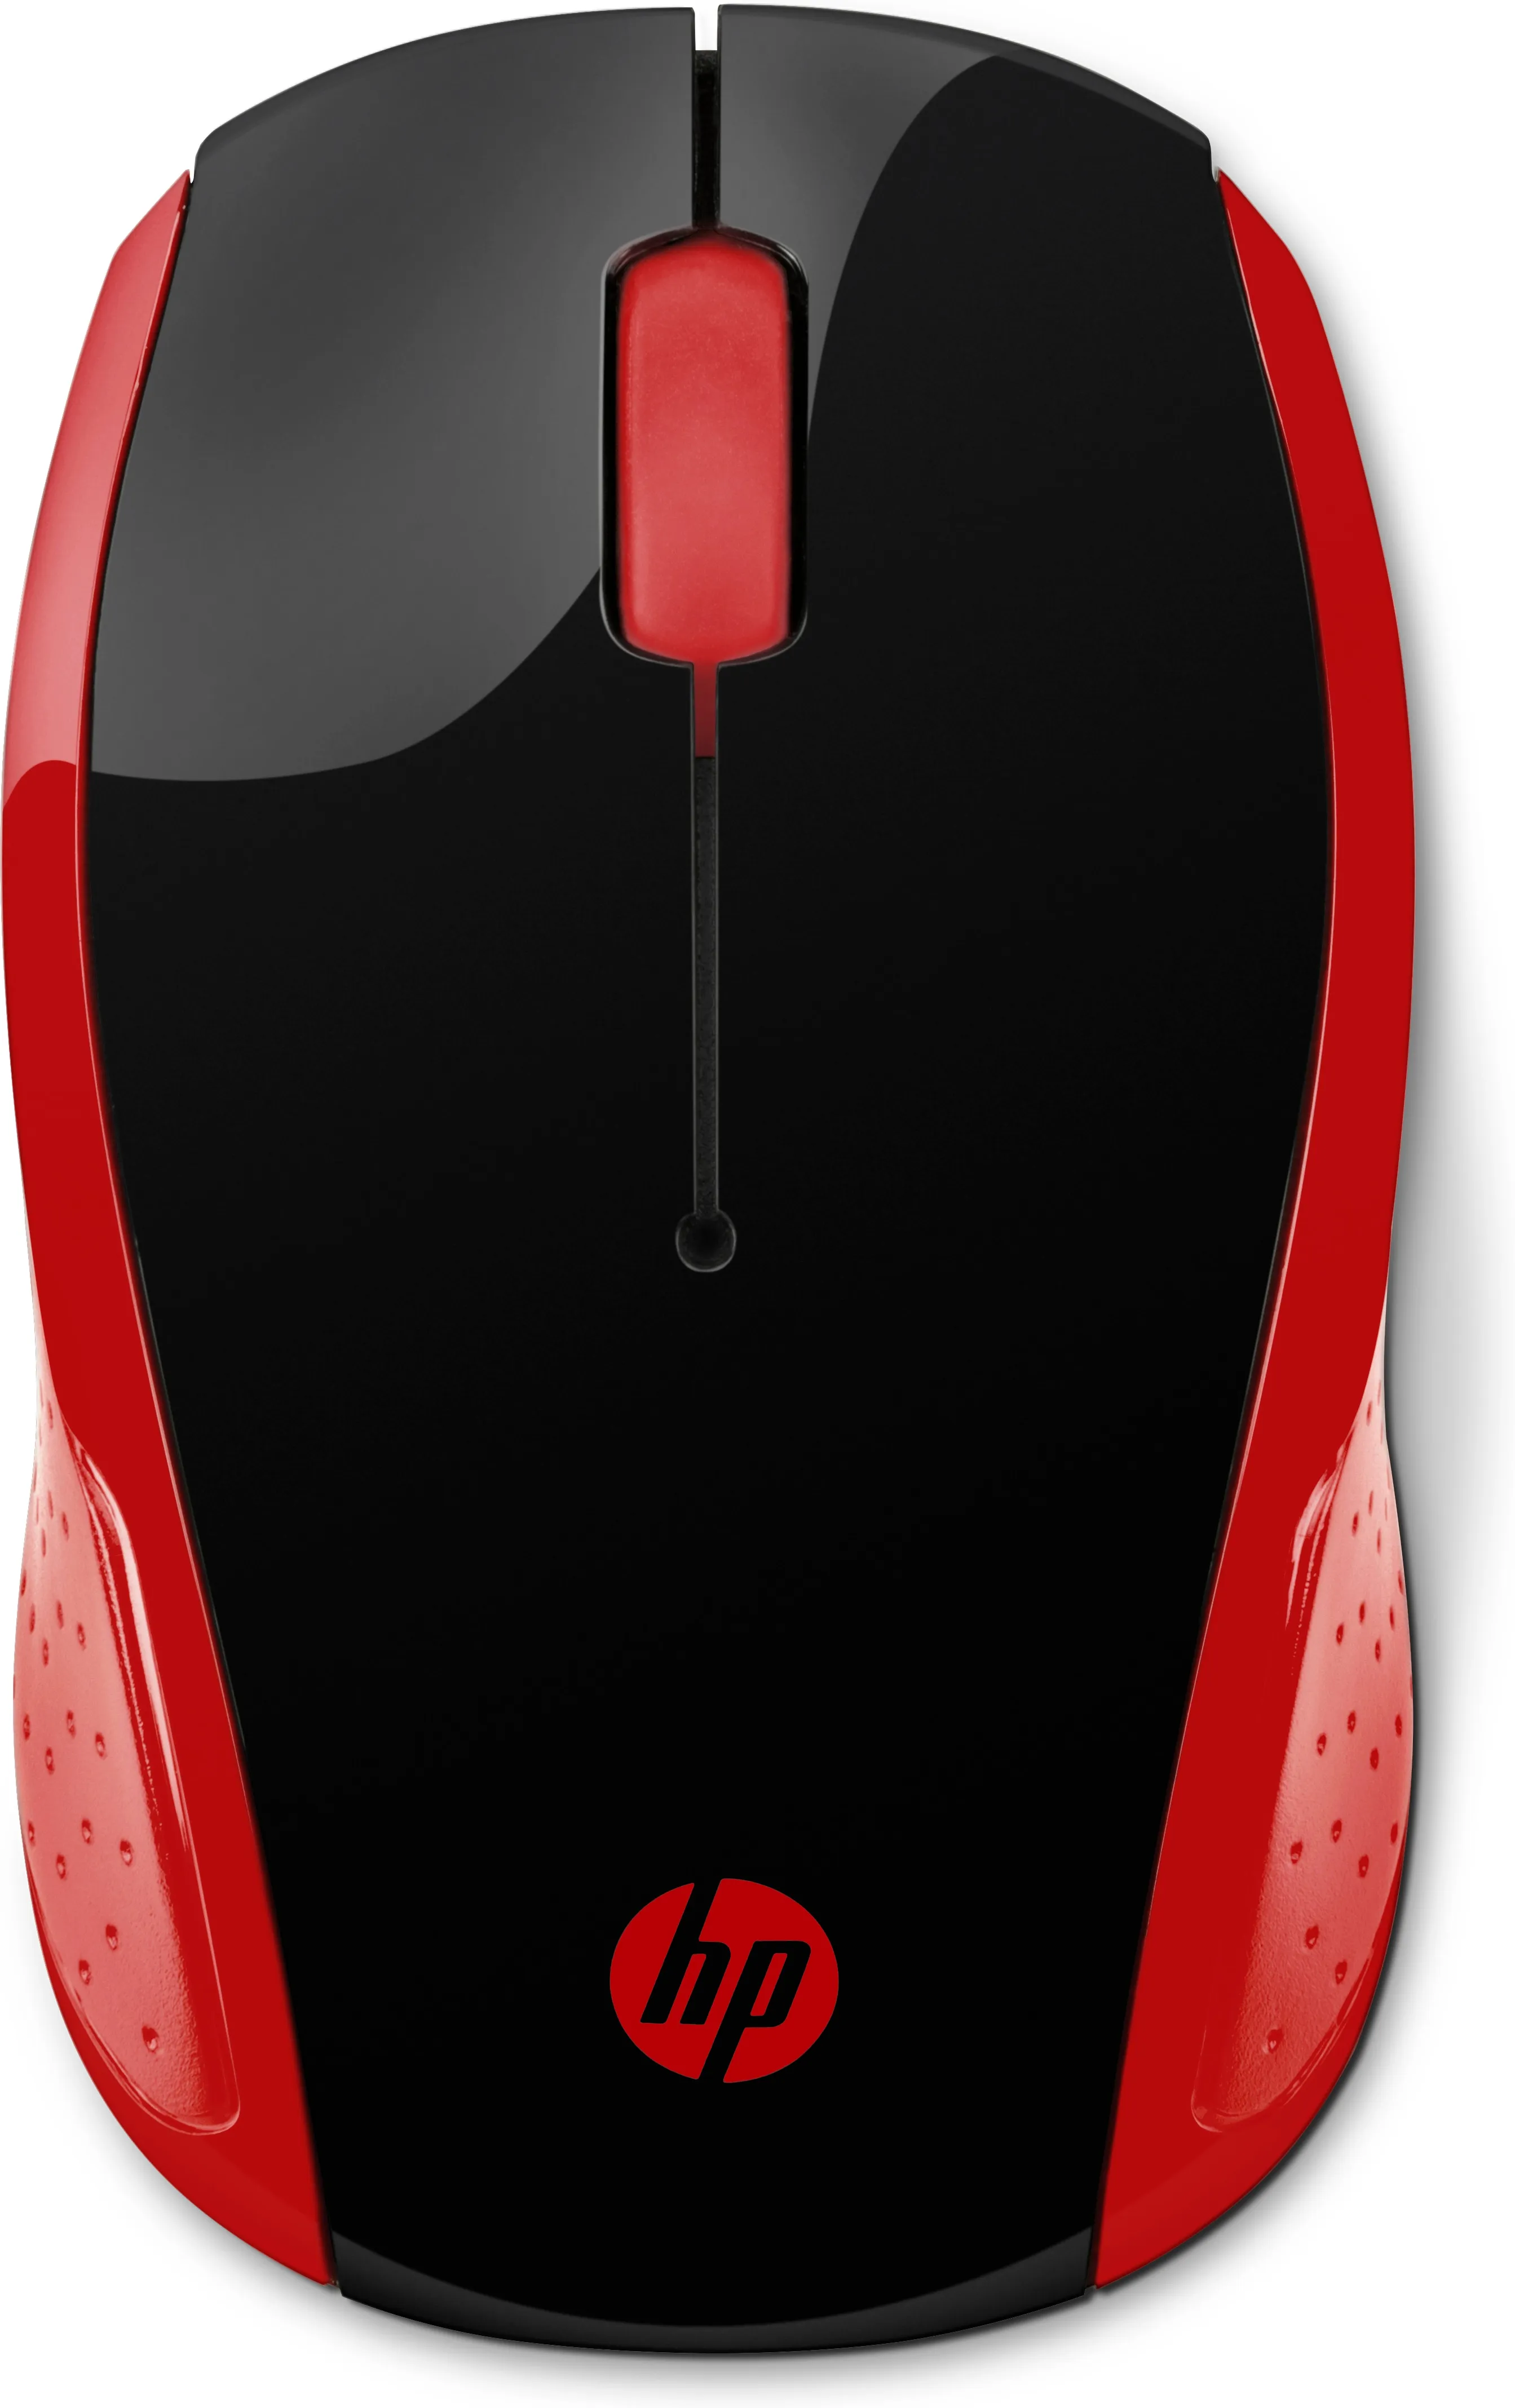 Vente HP Wireless Mouse 200 Empres Red HP au meilleur prix - visuel 10